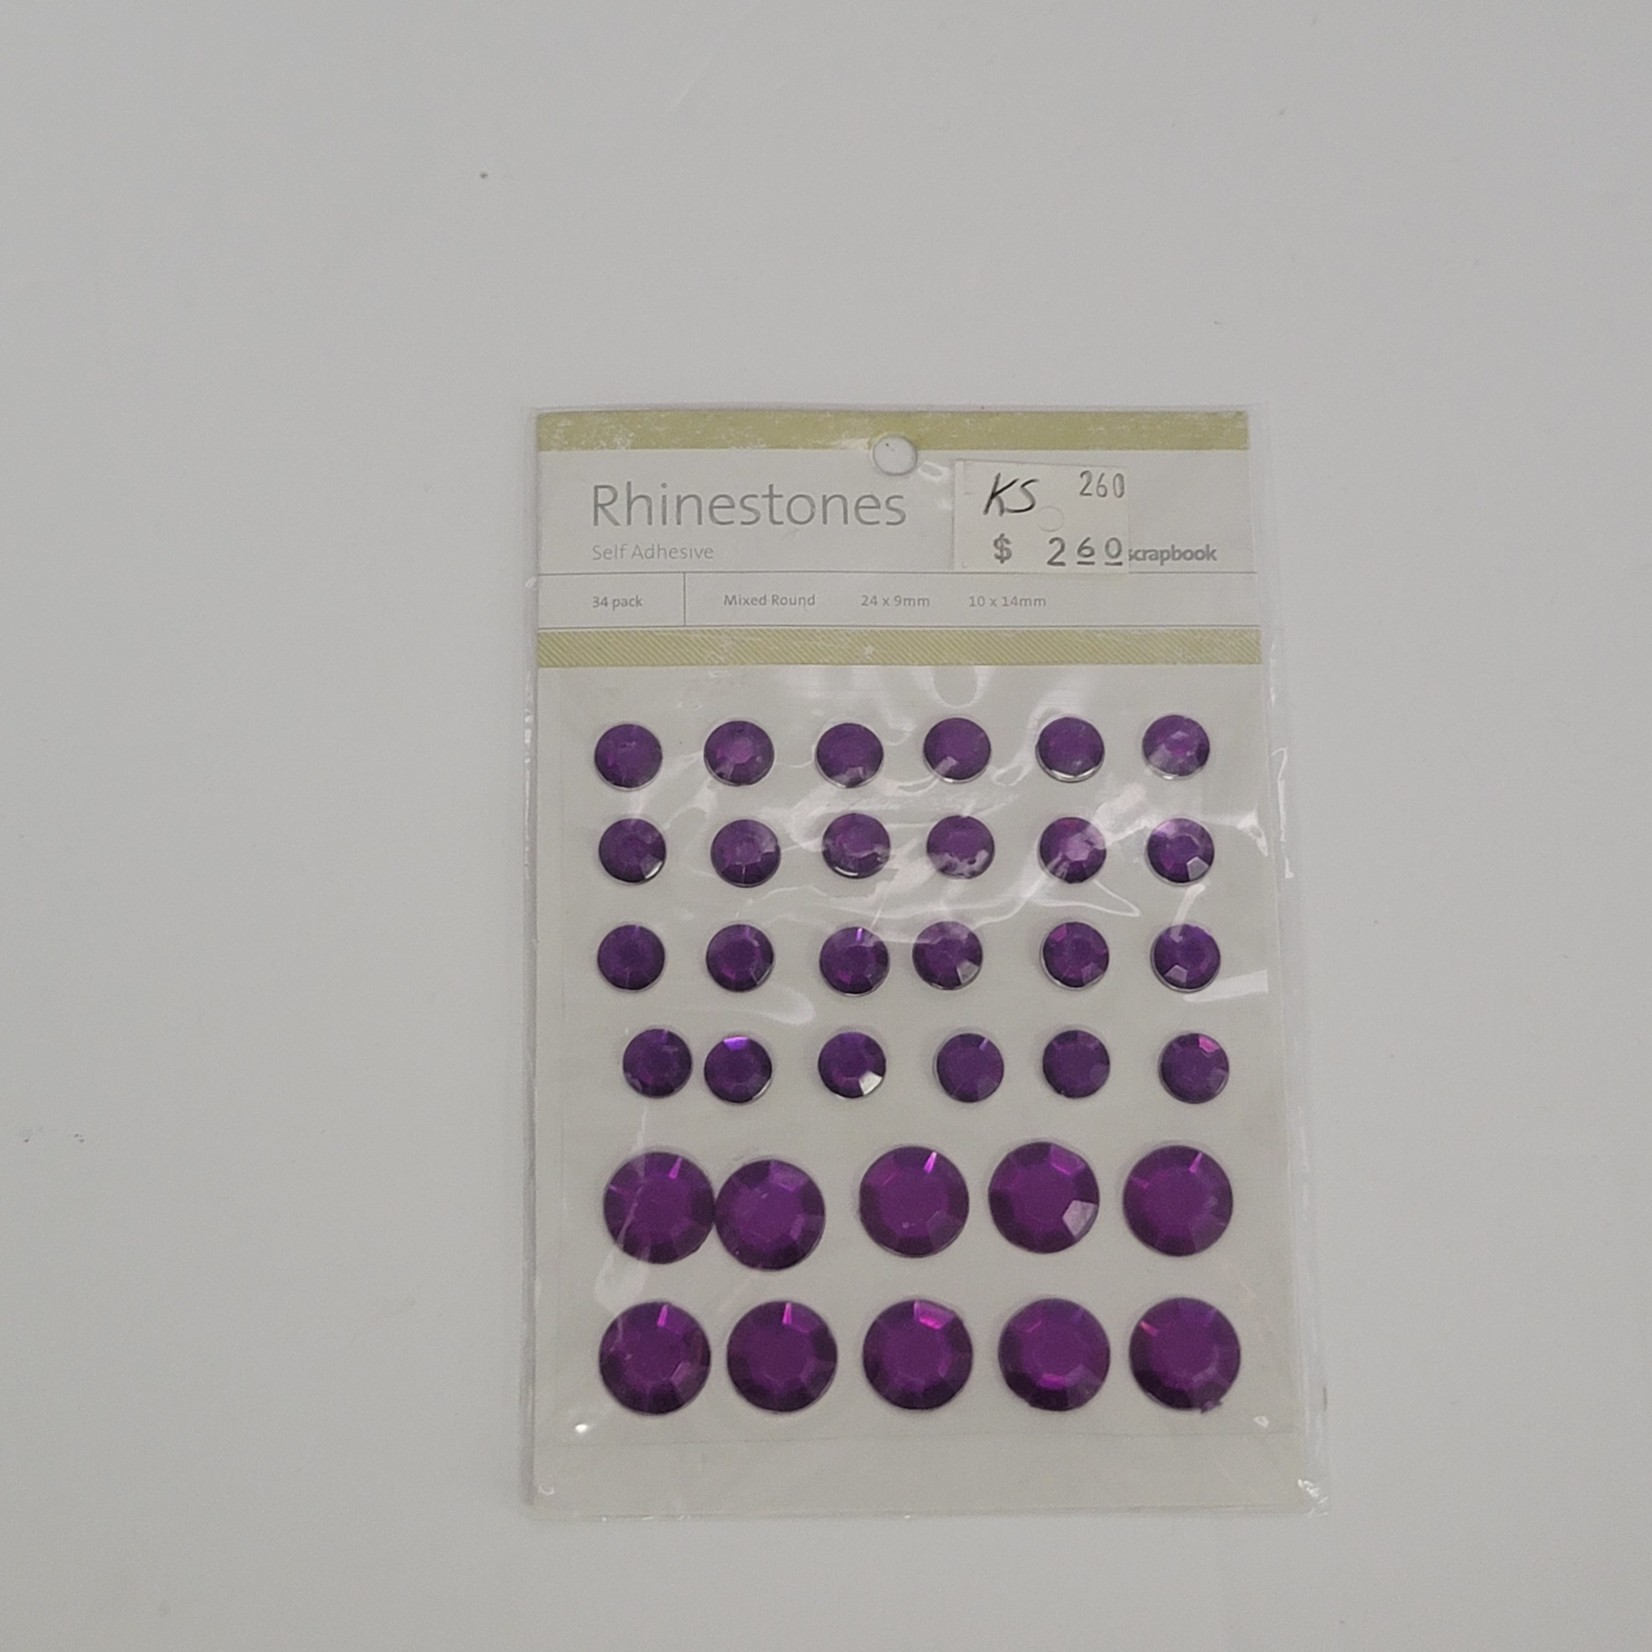 Prima Marketing Rhinestones - Self Adhesive - Mixed Rounds - Dark Purple